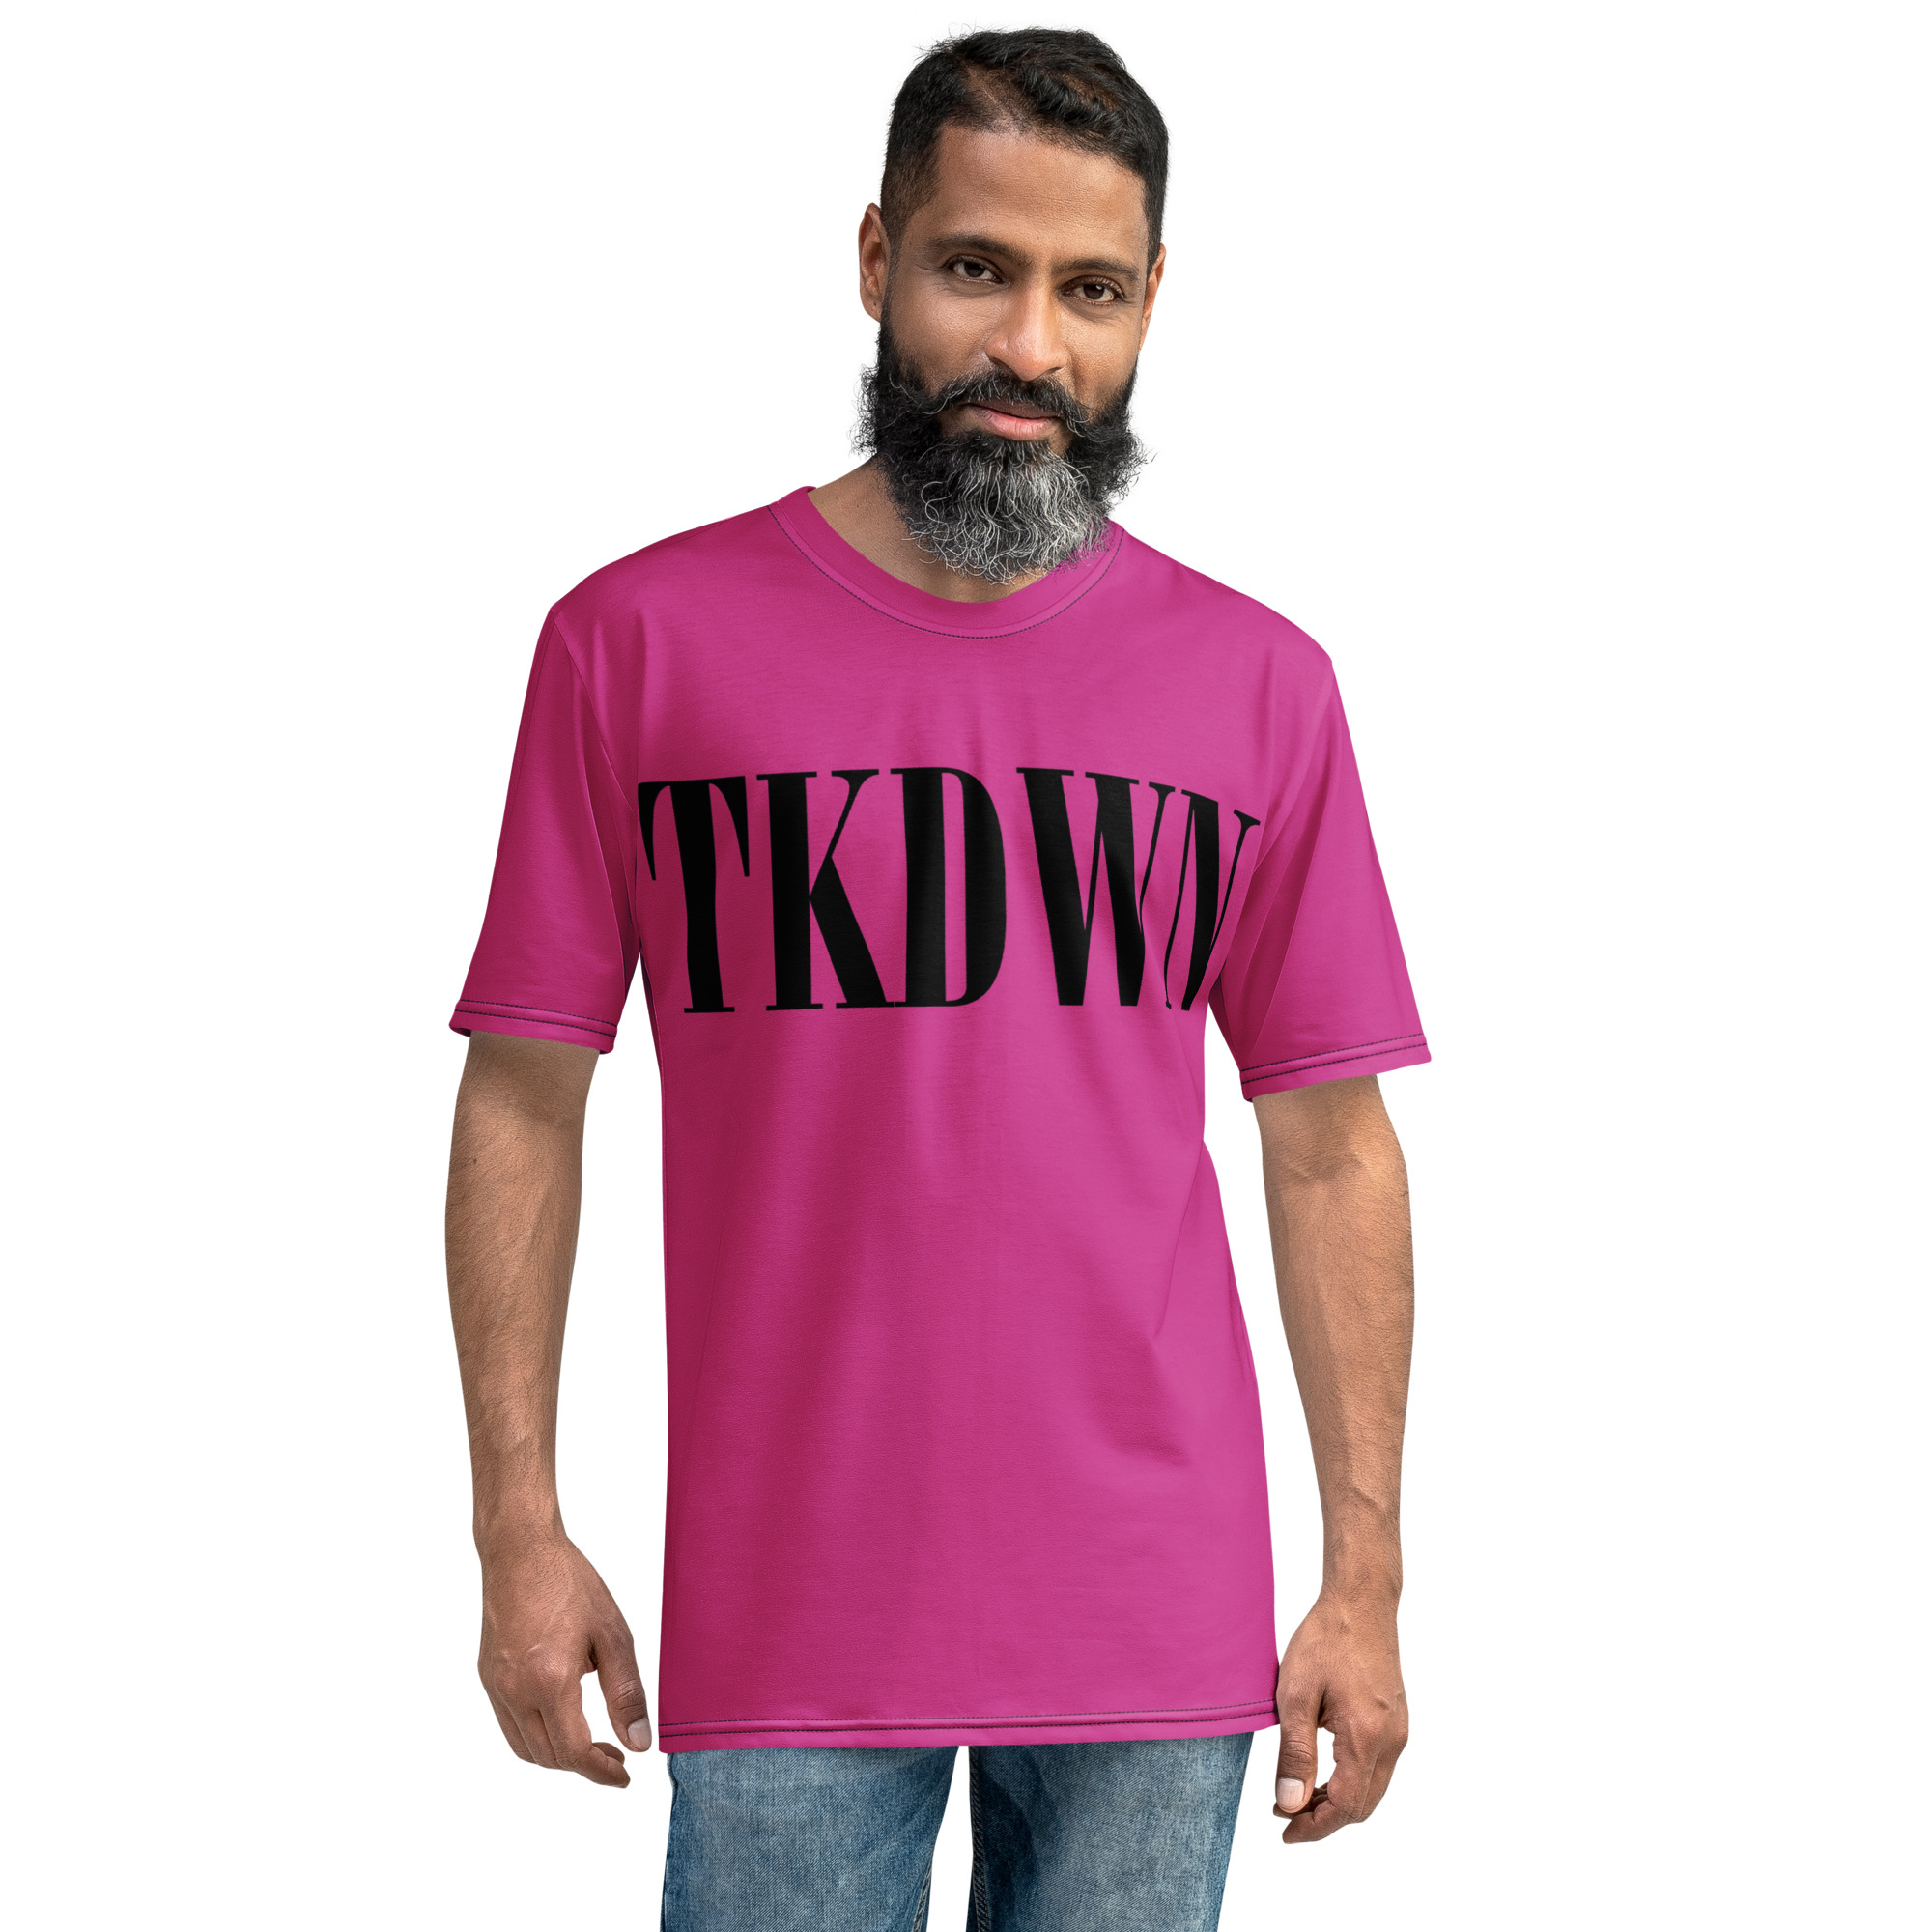 TKDWN Men’s t-shirt